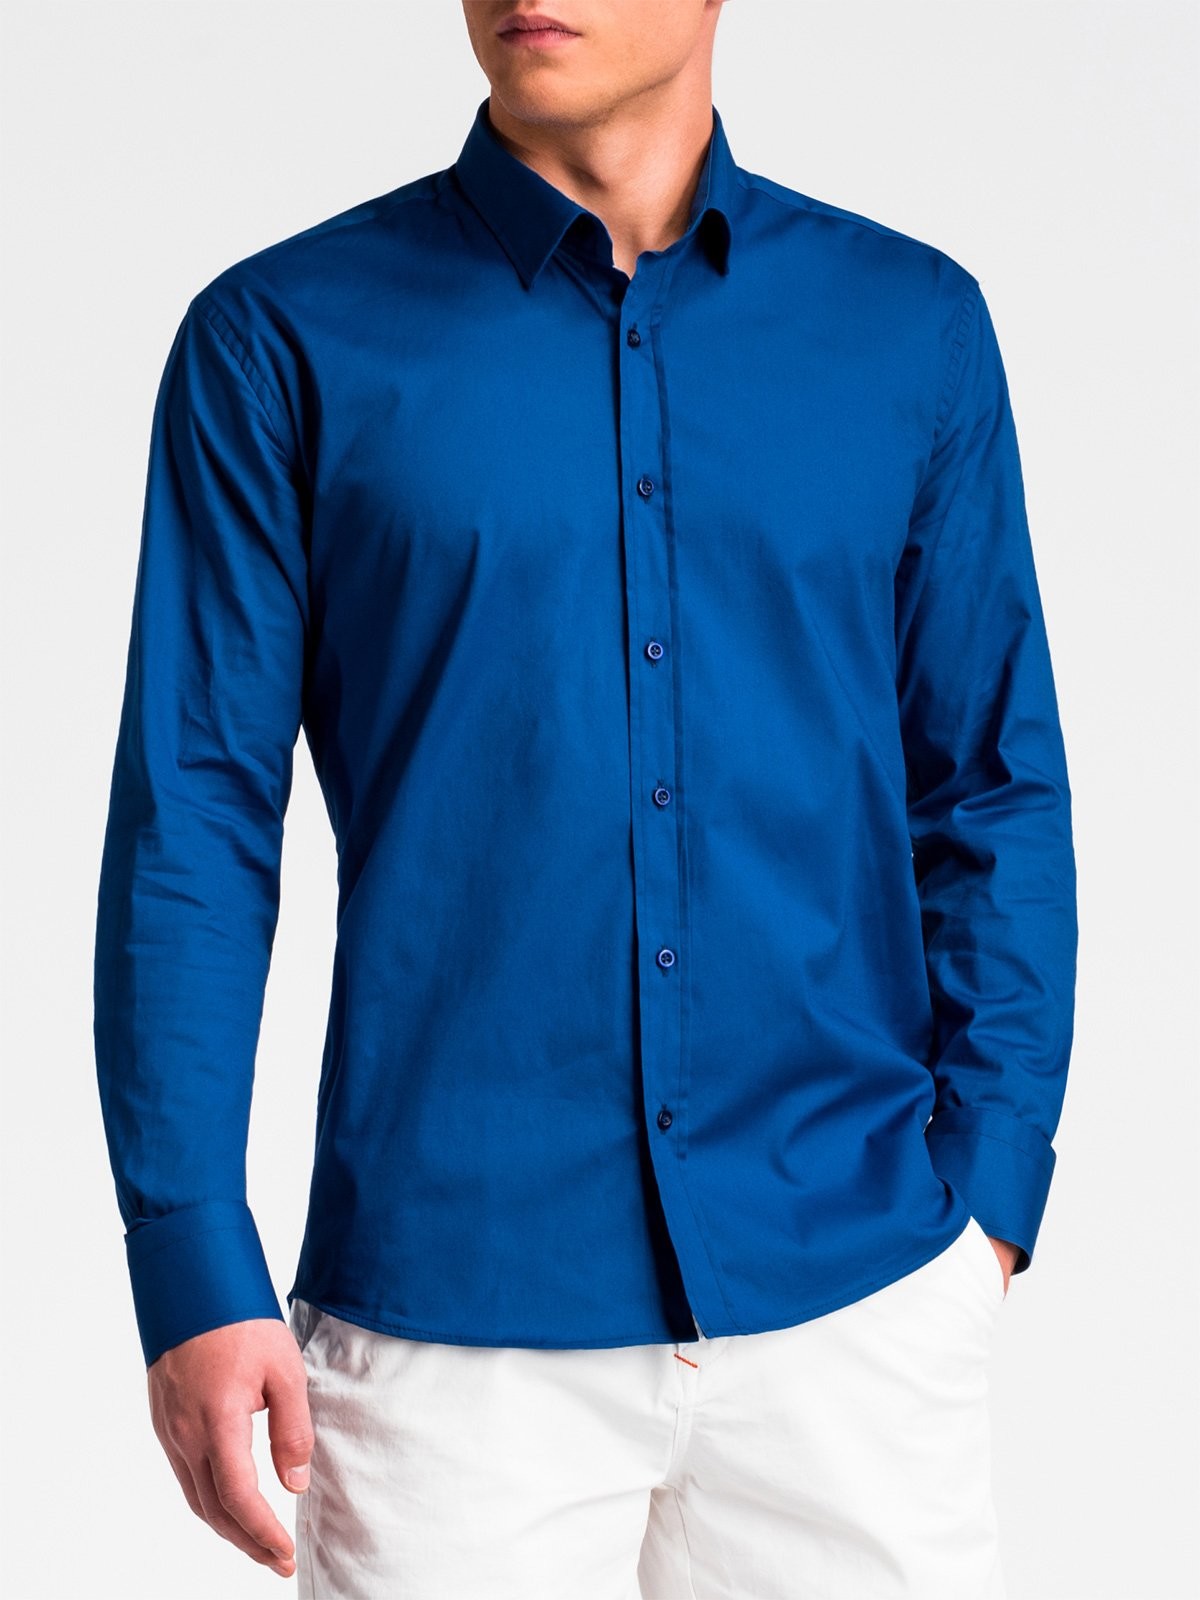 Купить синюю рубашку мужскую. Рубашка мужская 10 XL. Рубашка мужская Maximus Blue. Platin Club рубашка синяя мужская. Ярко синяя рубашка мужская.